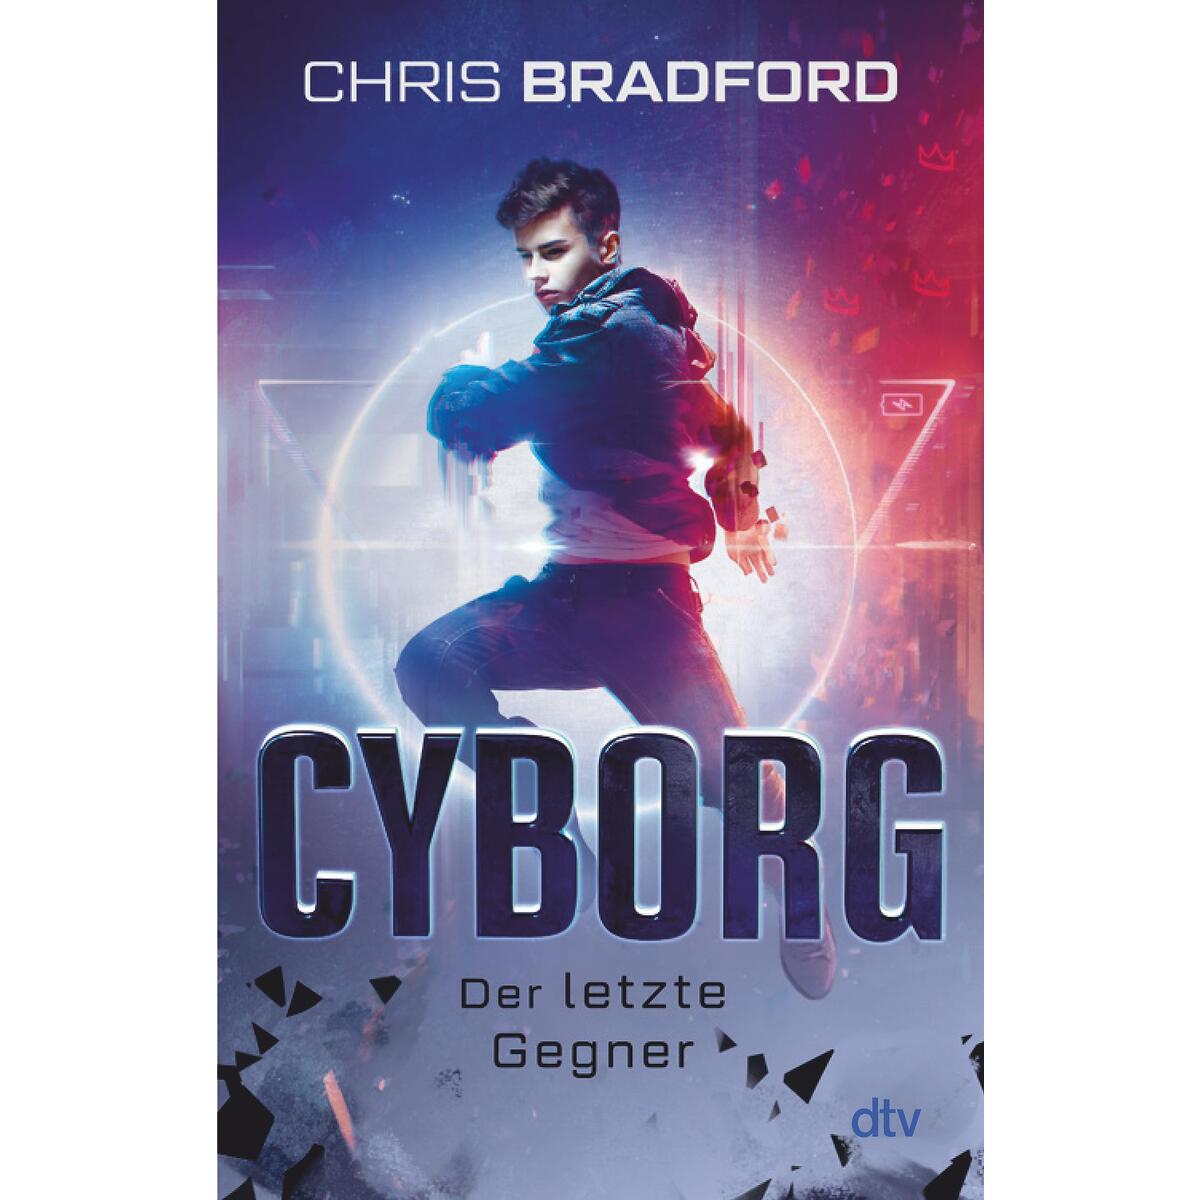 Cyborg - Der letzte Gegner von dtv Verlagsgesellschaft